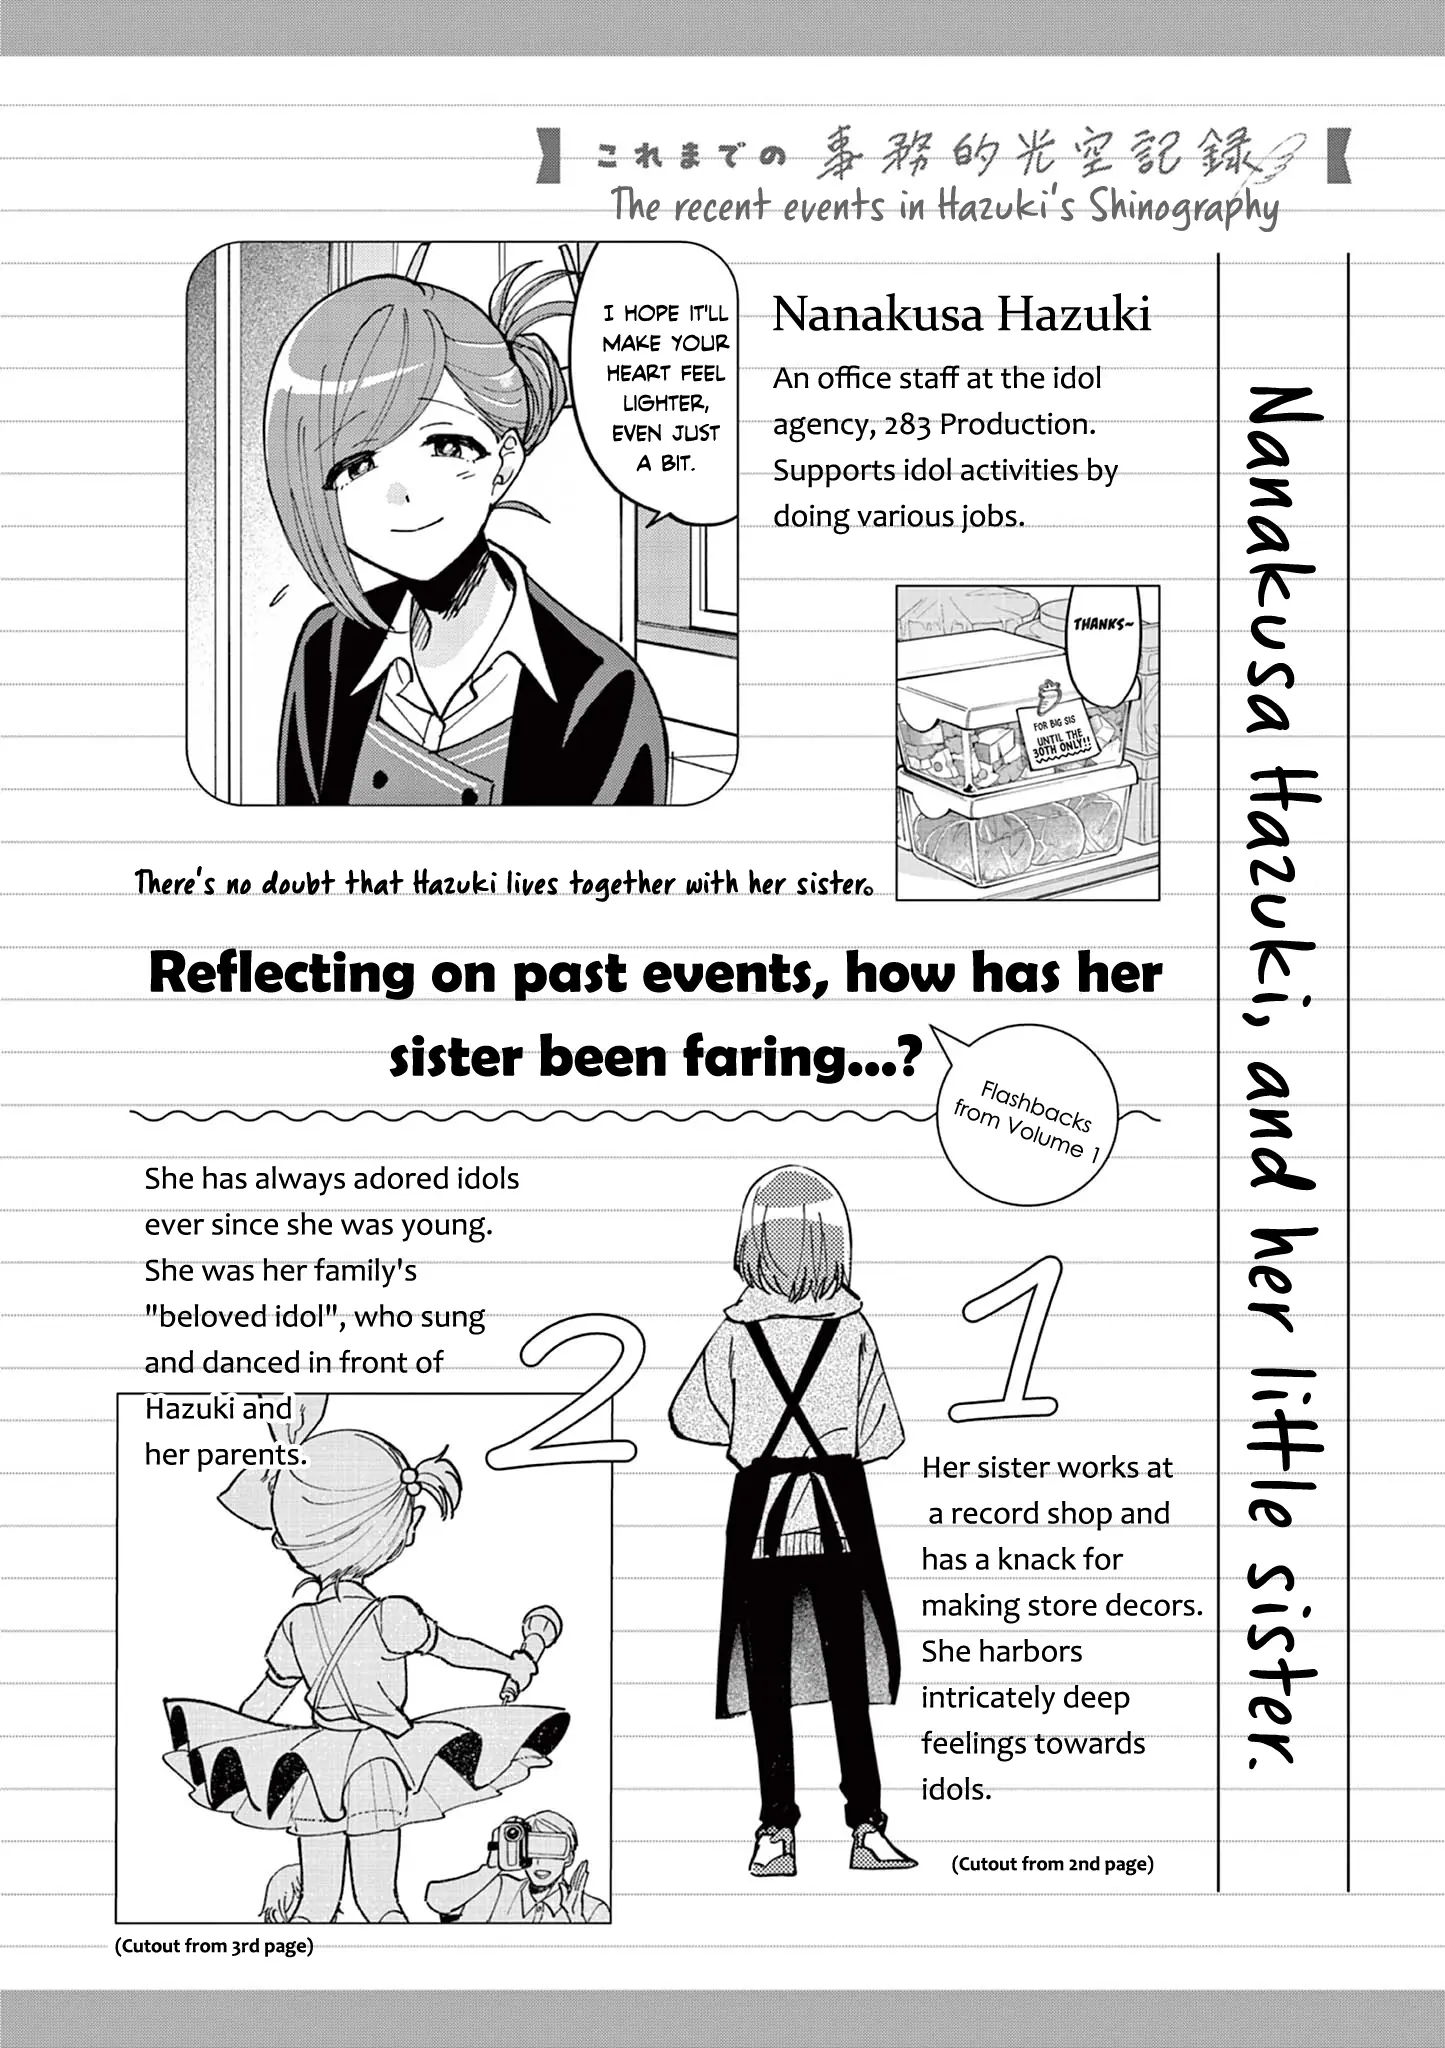 The Idolm@ster: Shiny Colors - Hazuki's Shinography - 5.5 page 1-6b00e6e2